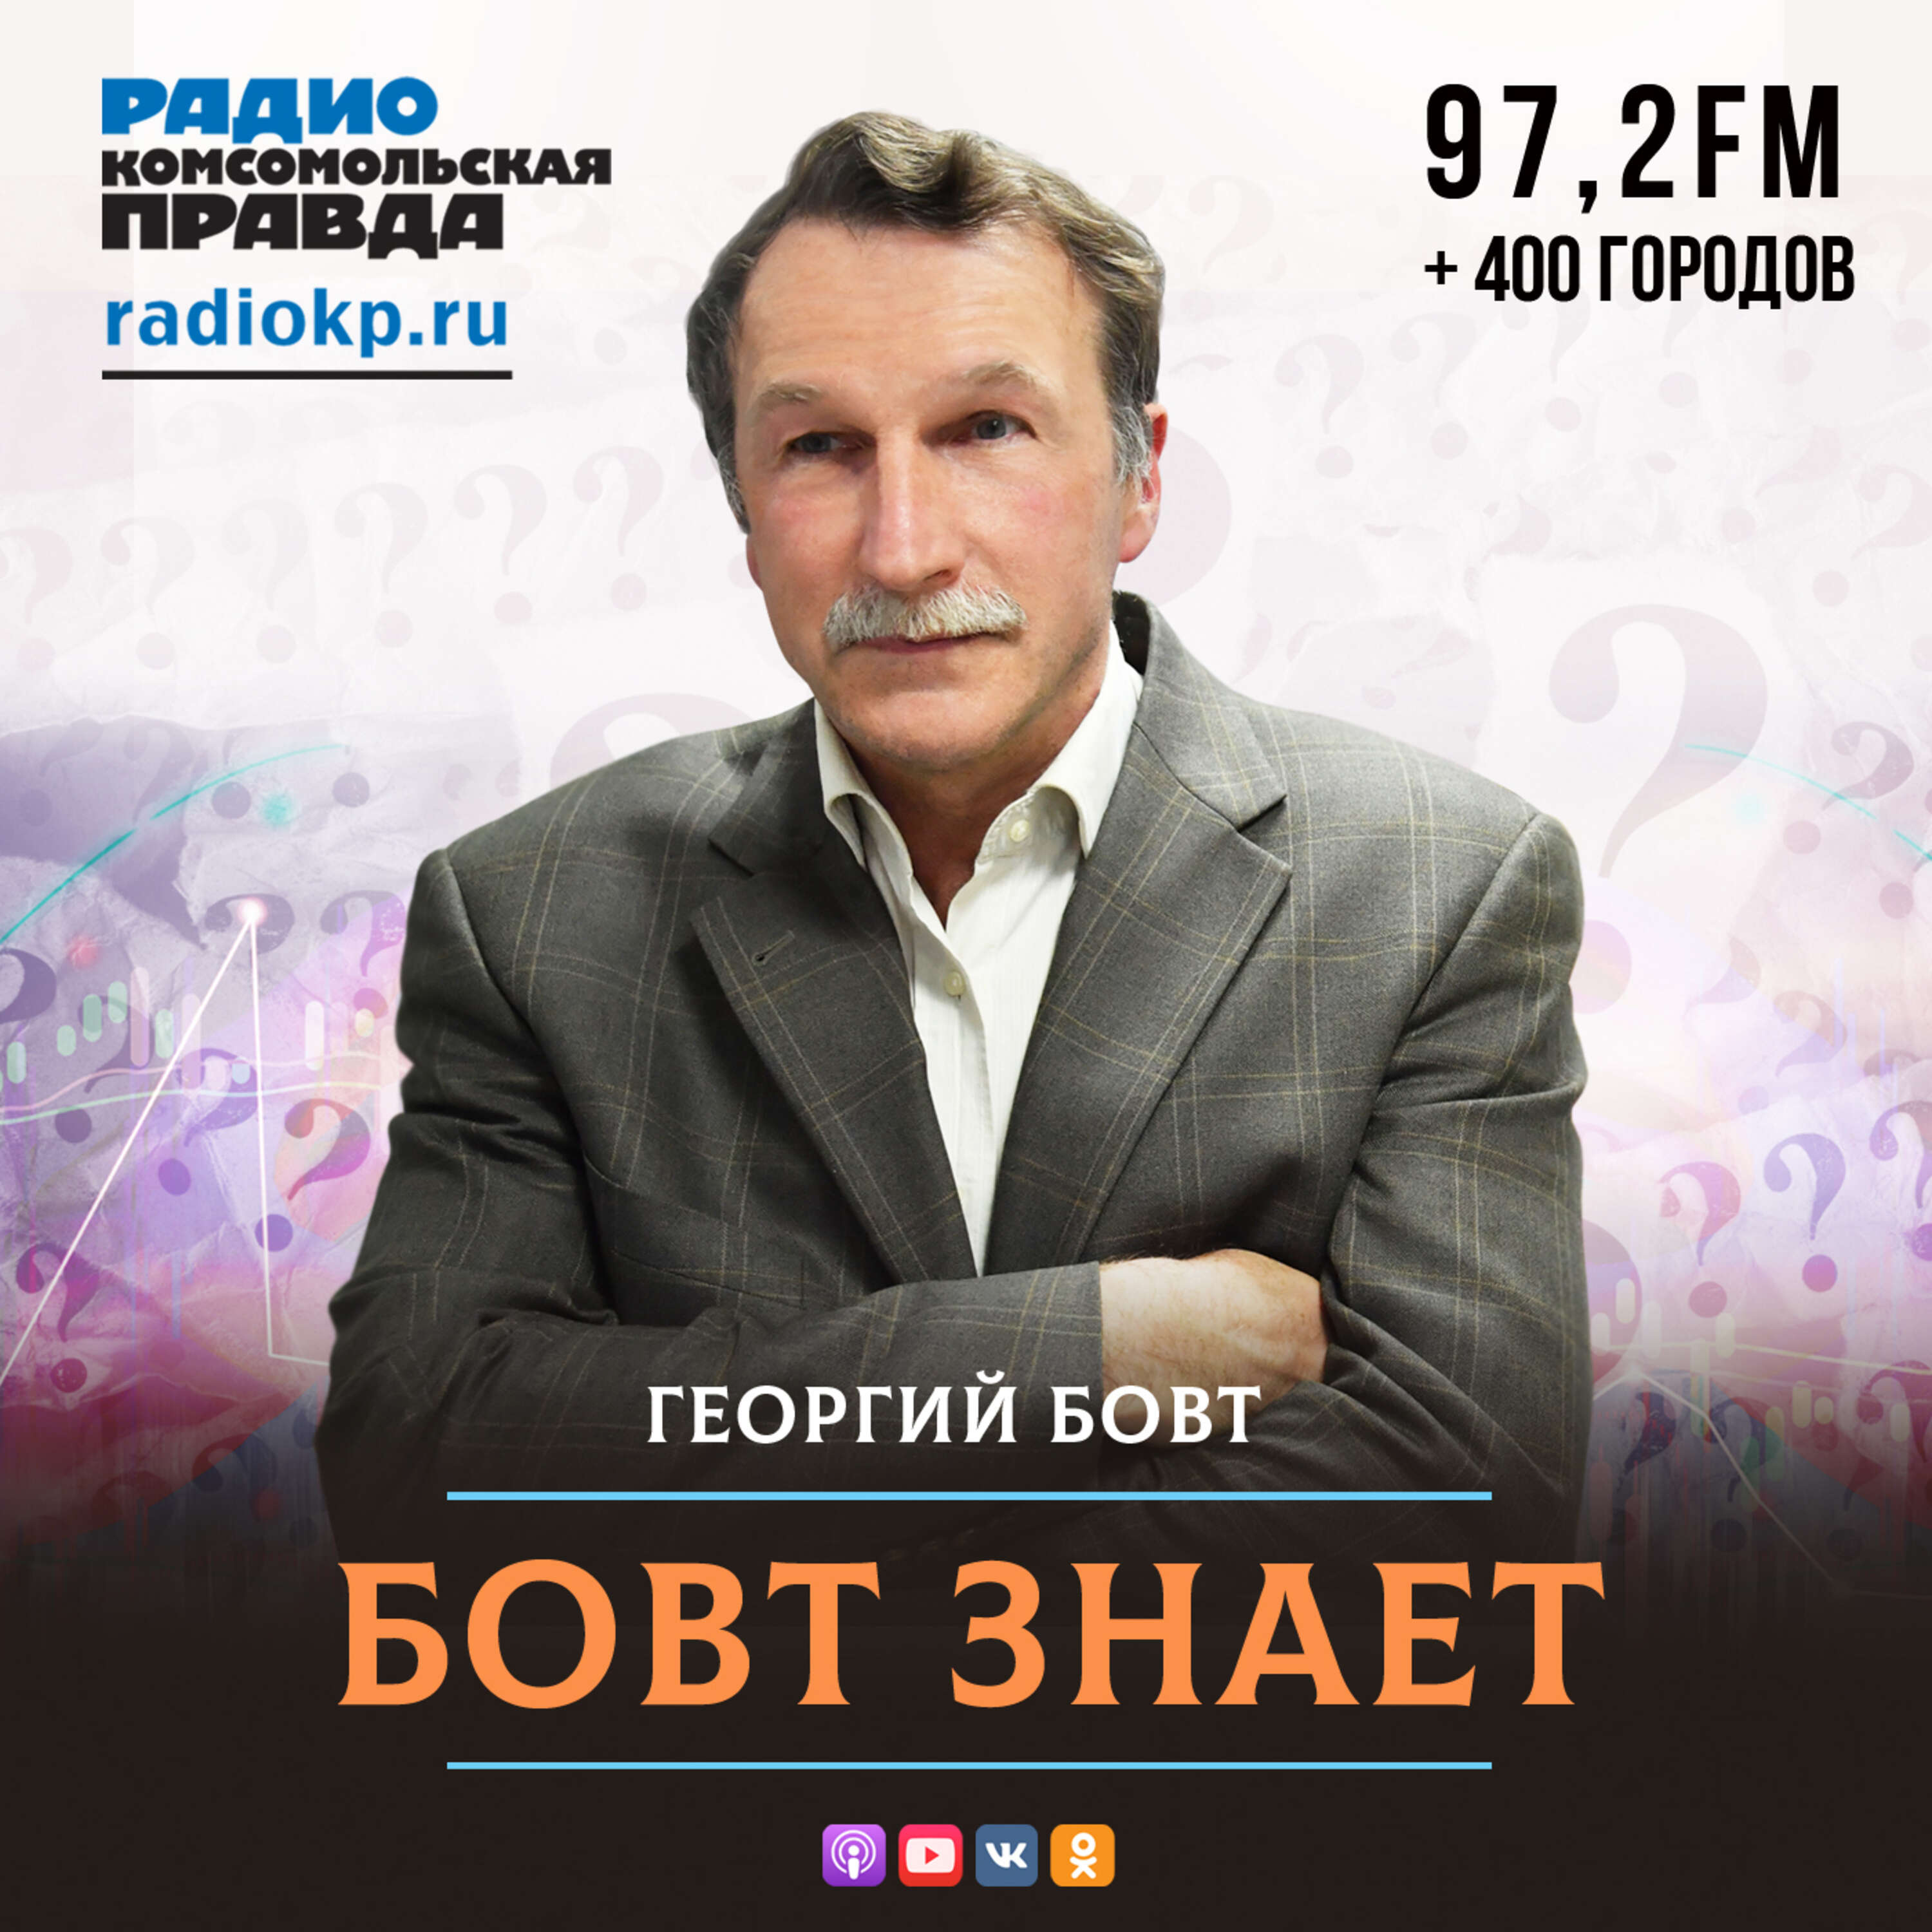 Бовт знает:Радио «Комсомольская правда»